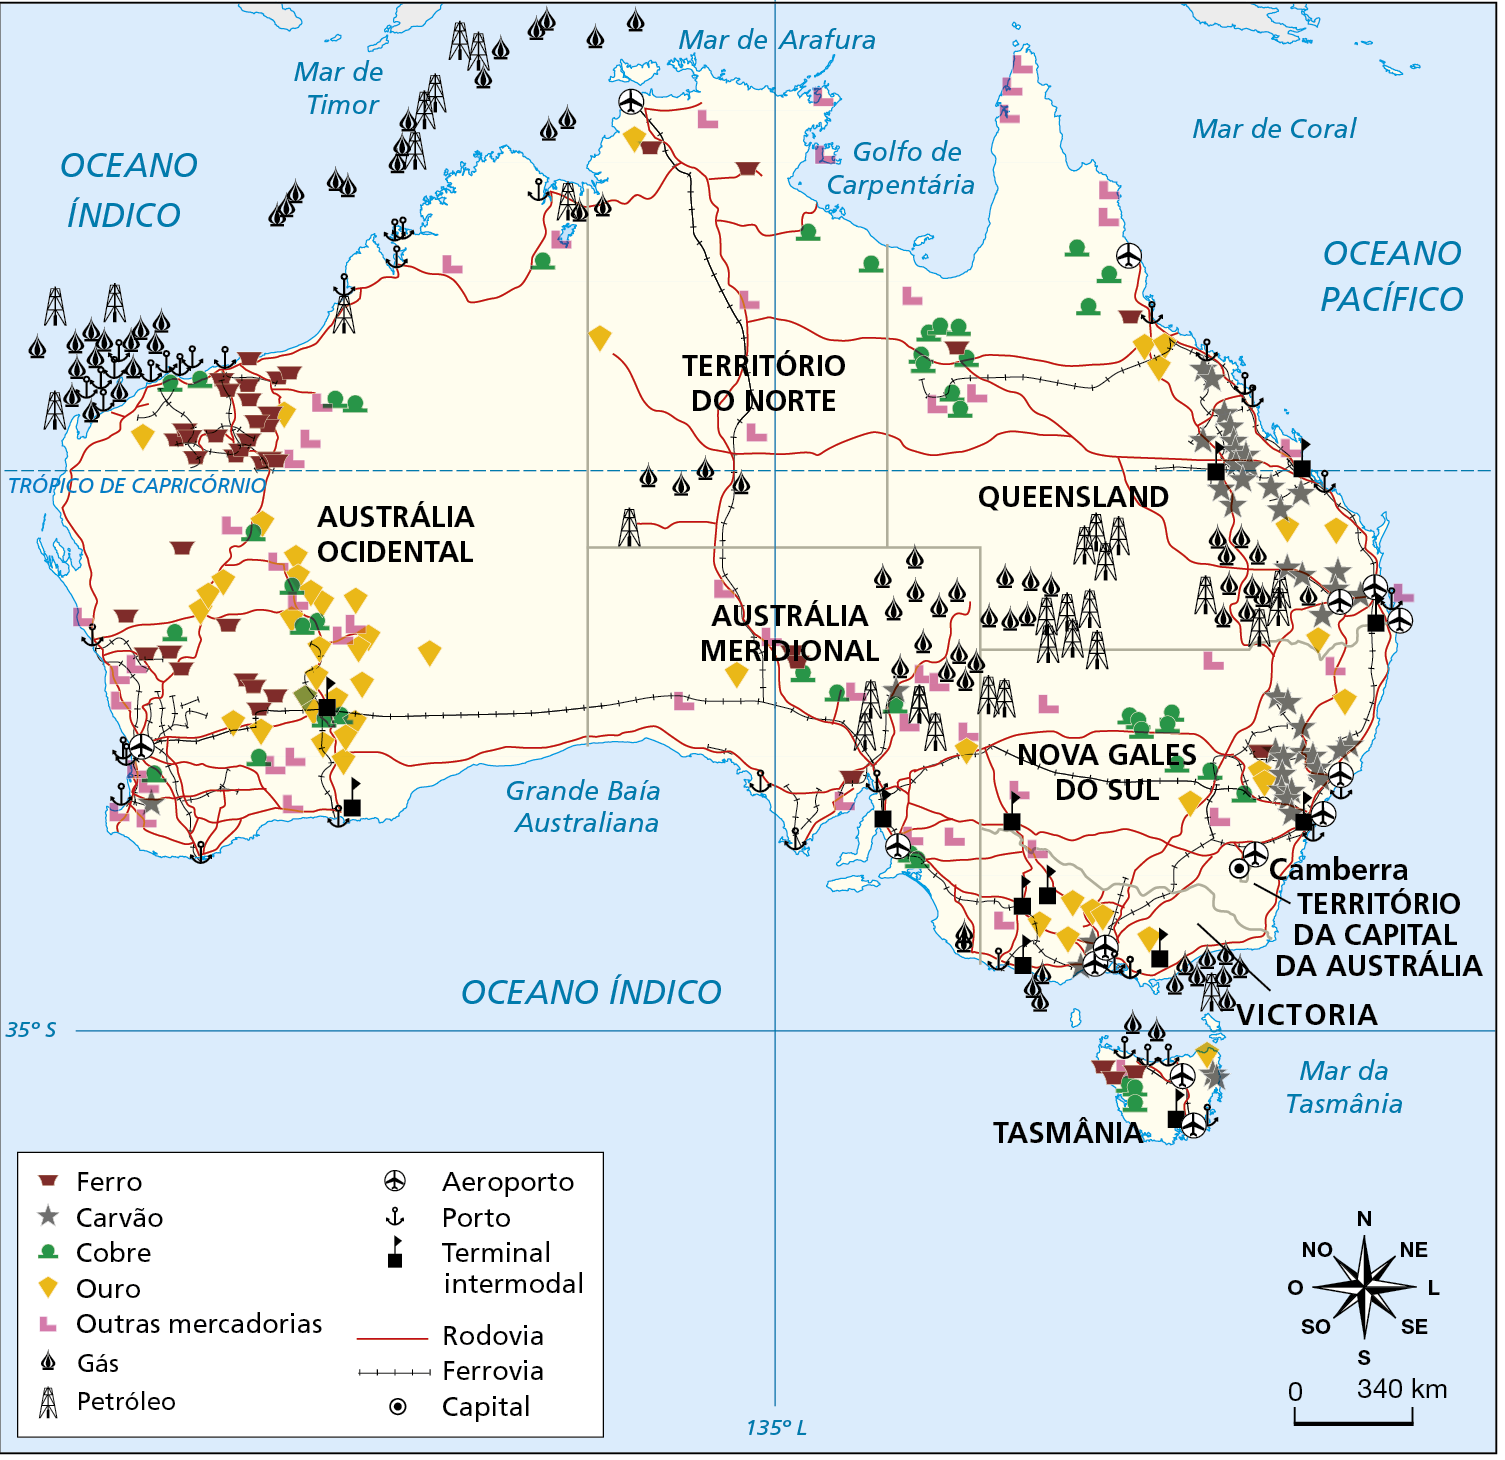 Mapa. Austrália: infraestrutura e recursos minerais. Mapa mostrando a distribuição das reservas minerais e das infraestruturas de transporte no território australiano. Ferro: predominante na porção oeste e Tasmânia. Carvão: predominante na costa leste. Cobre: porção leste, norte, sudeste e Tasmânia. Ouro: porção oeste, sul e leste. Outras mercadorias: costa oeste e leste, porção norte e sul. Gás: interior da porção leste e costa noroeste. Petróleo: interior da porção leste, costa do noroeste e sul. Aeroporto: costa norte, sudoeste, sul, sudeste, nordeste e Tasmânia. Porto: costa leste, oeste e Tasmânia. Terminal intermodal: costa leste, oeste, sul e Tasmânia. Rodovia: predominante na porção sudoeste; sudeste, norte e nordeste. Ferrovia: duas principais linhas férreas cruzando o país de leste a oeste e de sul ao norte. Capital: Camberra, situada na porção sudoeste. Na parte inferior direita, a rosa dos ventos e a escala de 0 a 340 quilômetros.